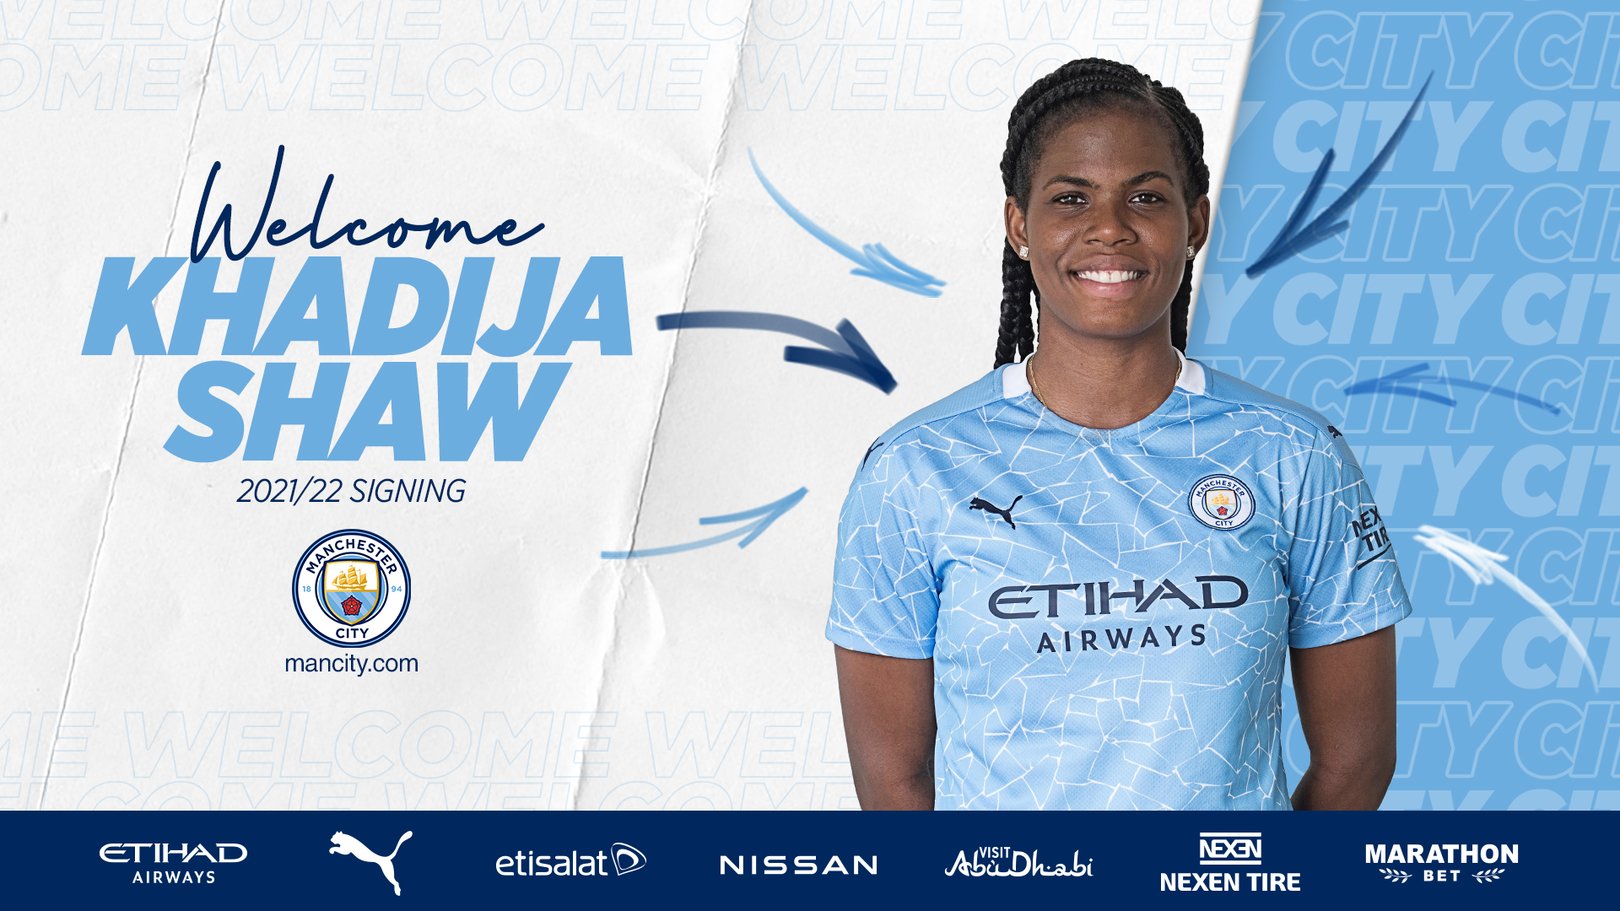 Khadija 'Bunny' Shaw signs for City